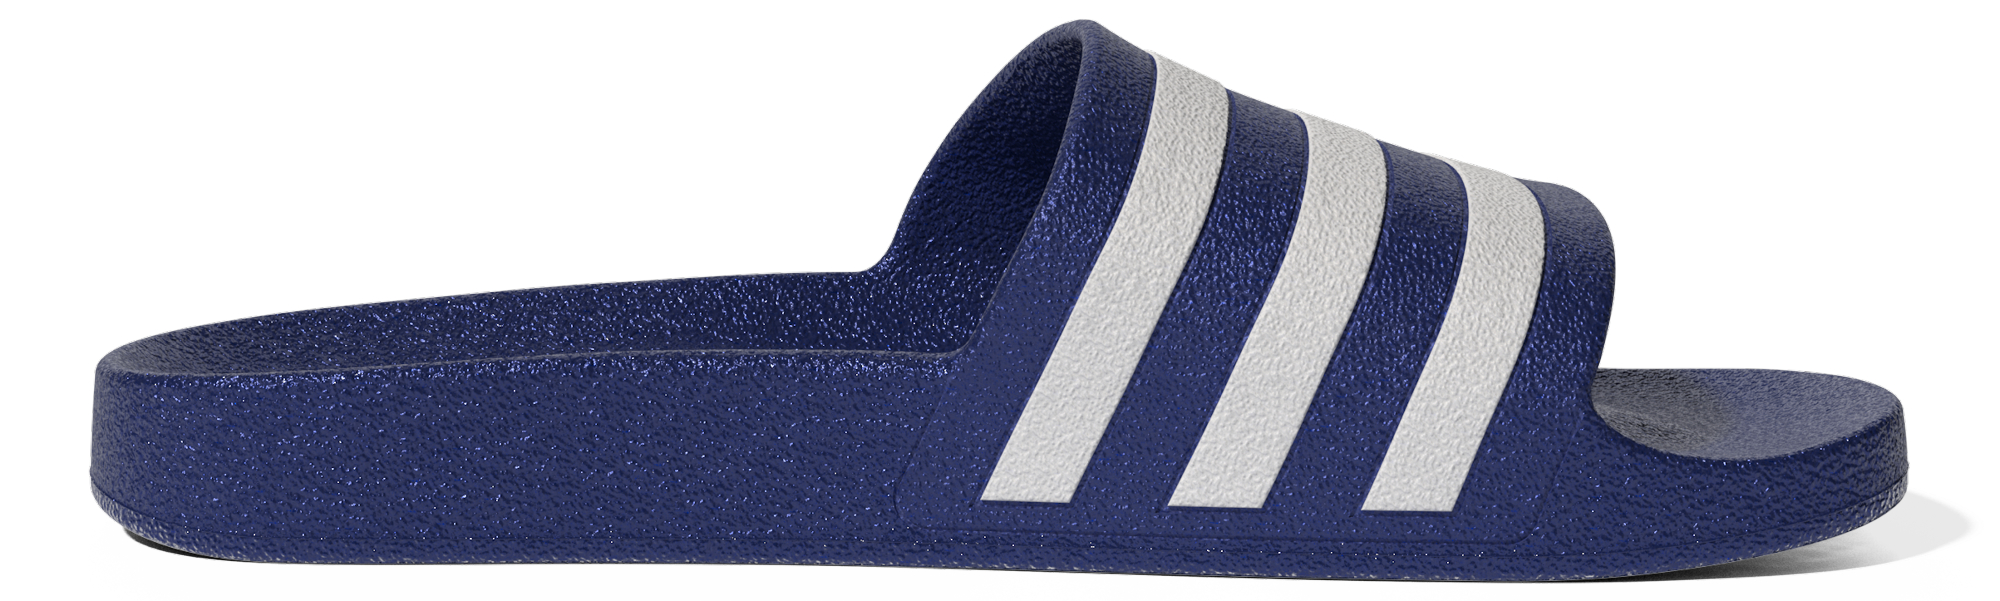 фото Сланцы мужские adidas adilette aqua синие 8 uk